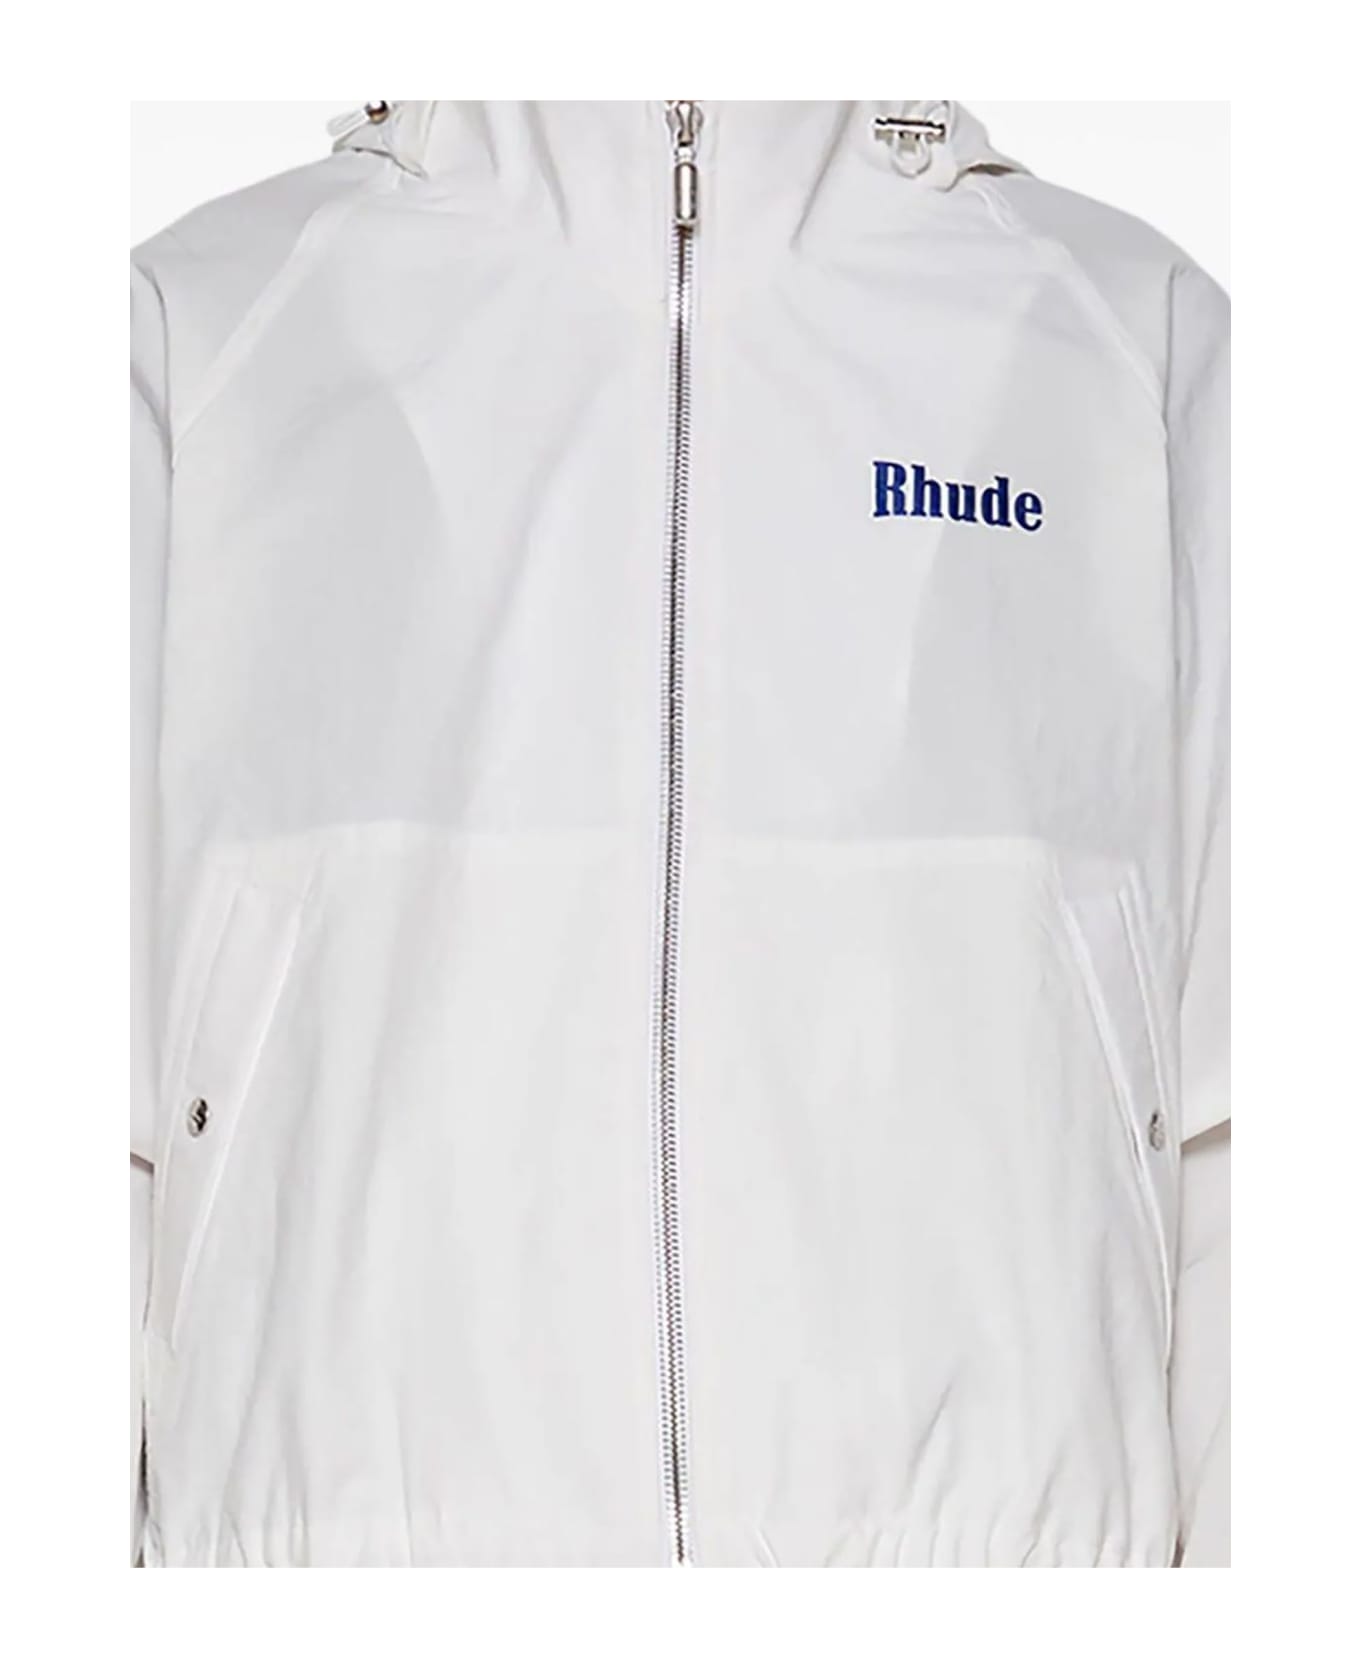 Rhude White Track Jacket - White